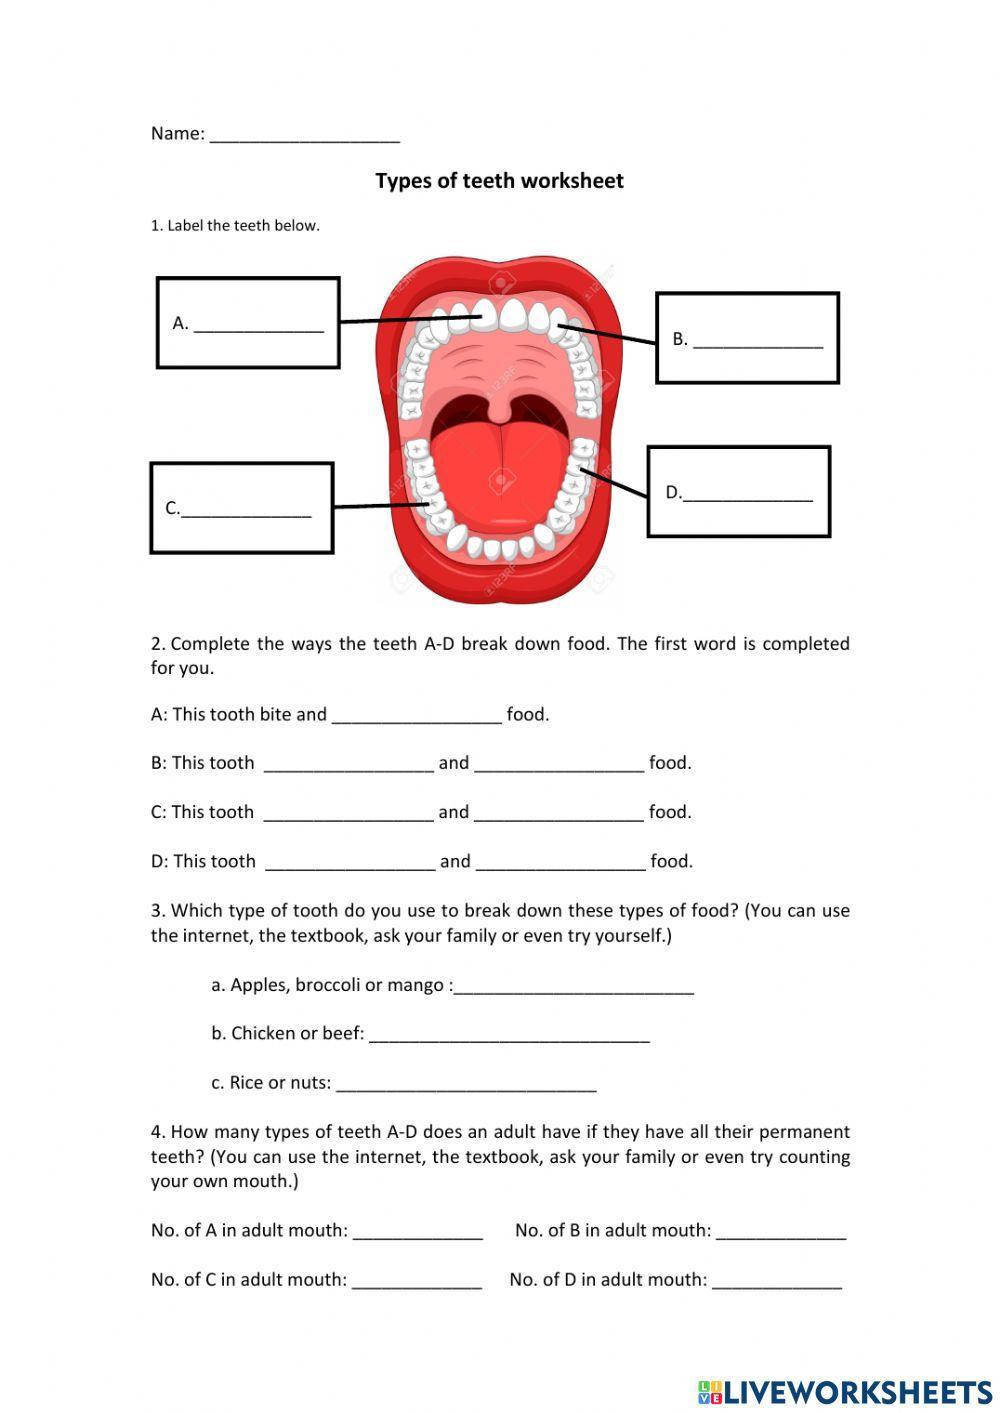 Types of teeth worksheet